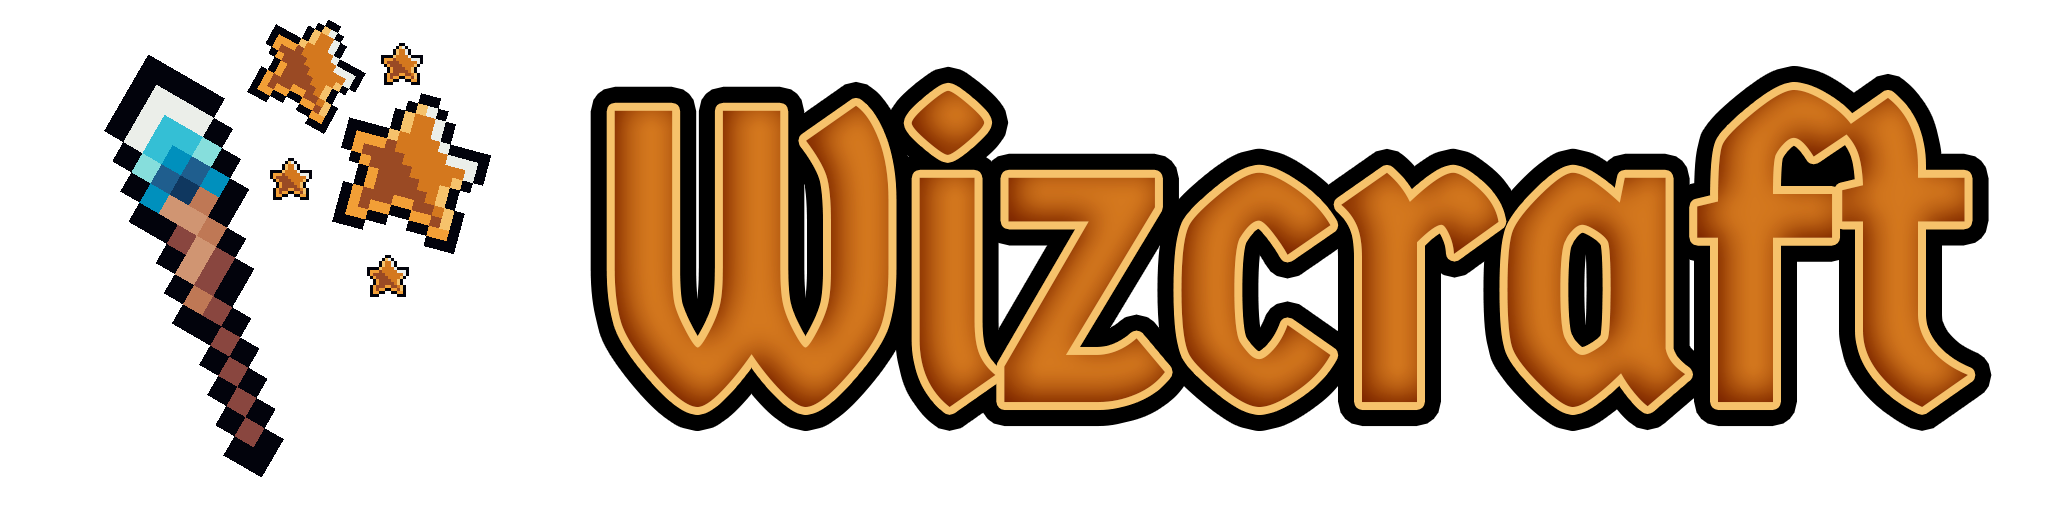 Wizcraft Banner